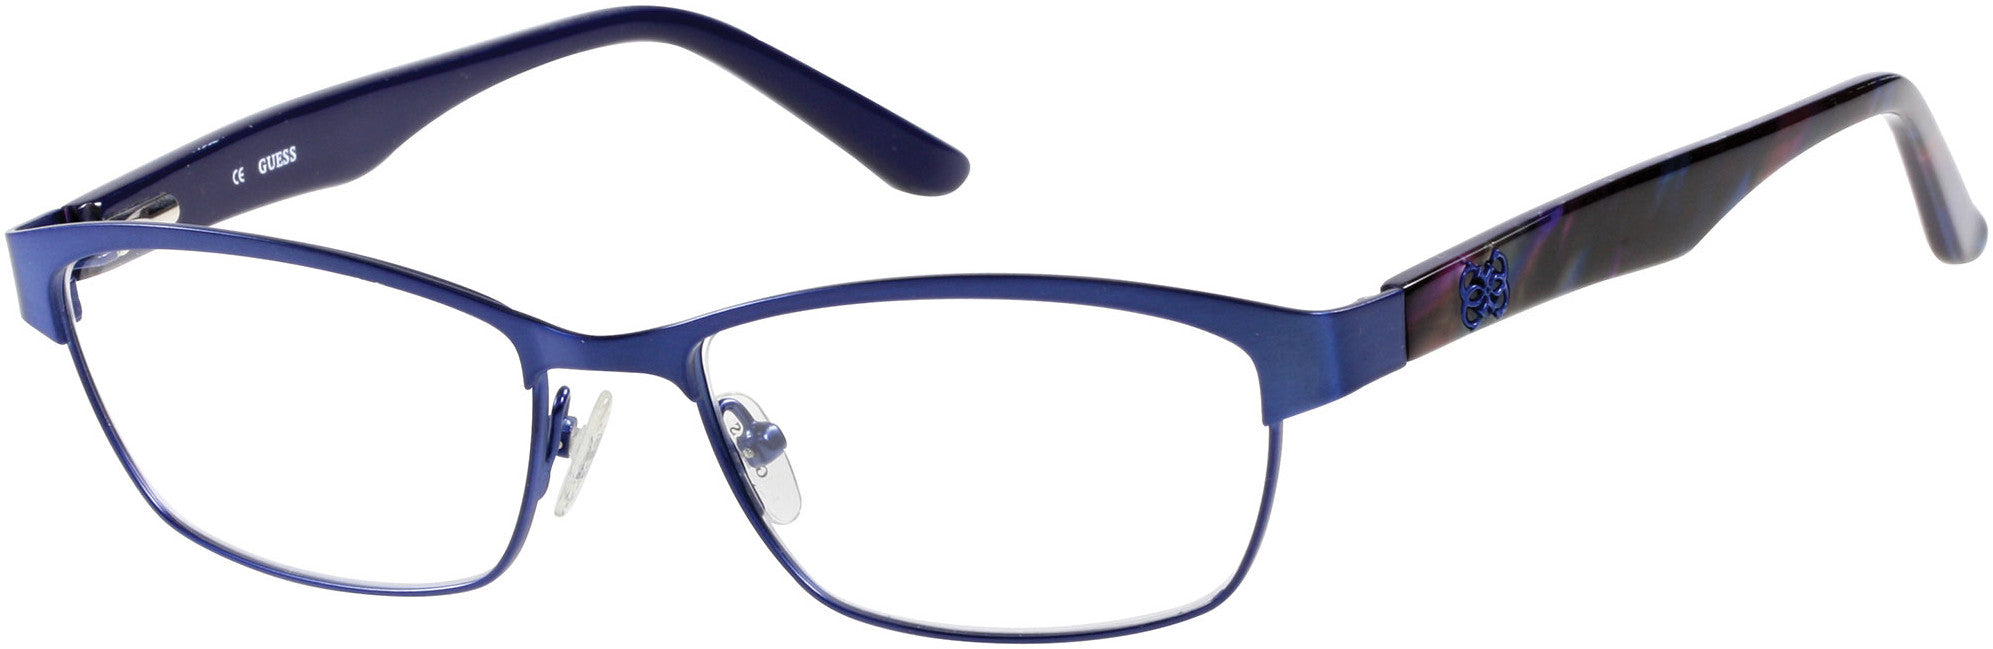 Guess GU2420 Eyeglasses B24-B24 - Blue